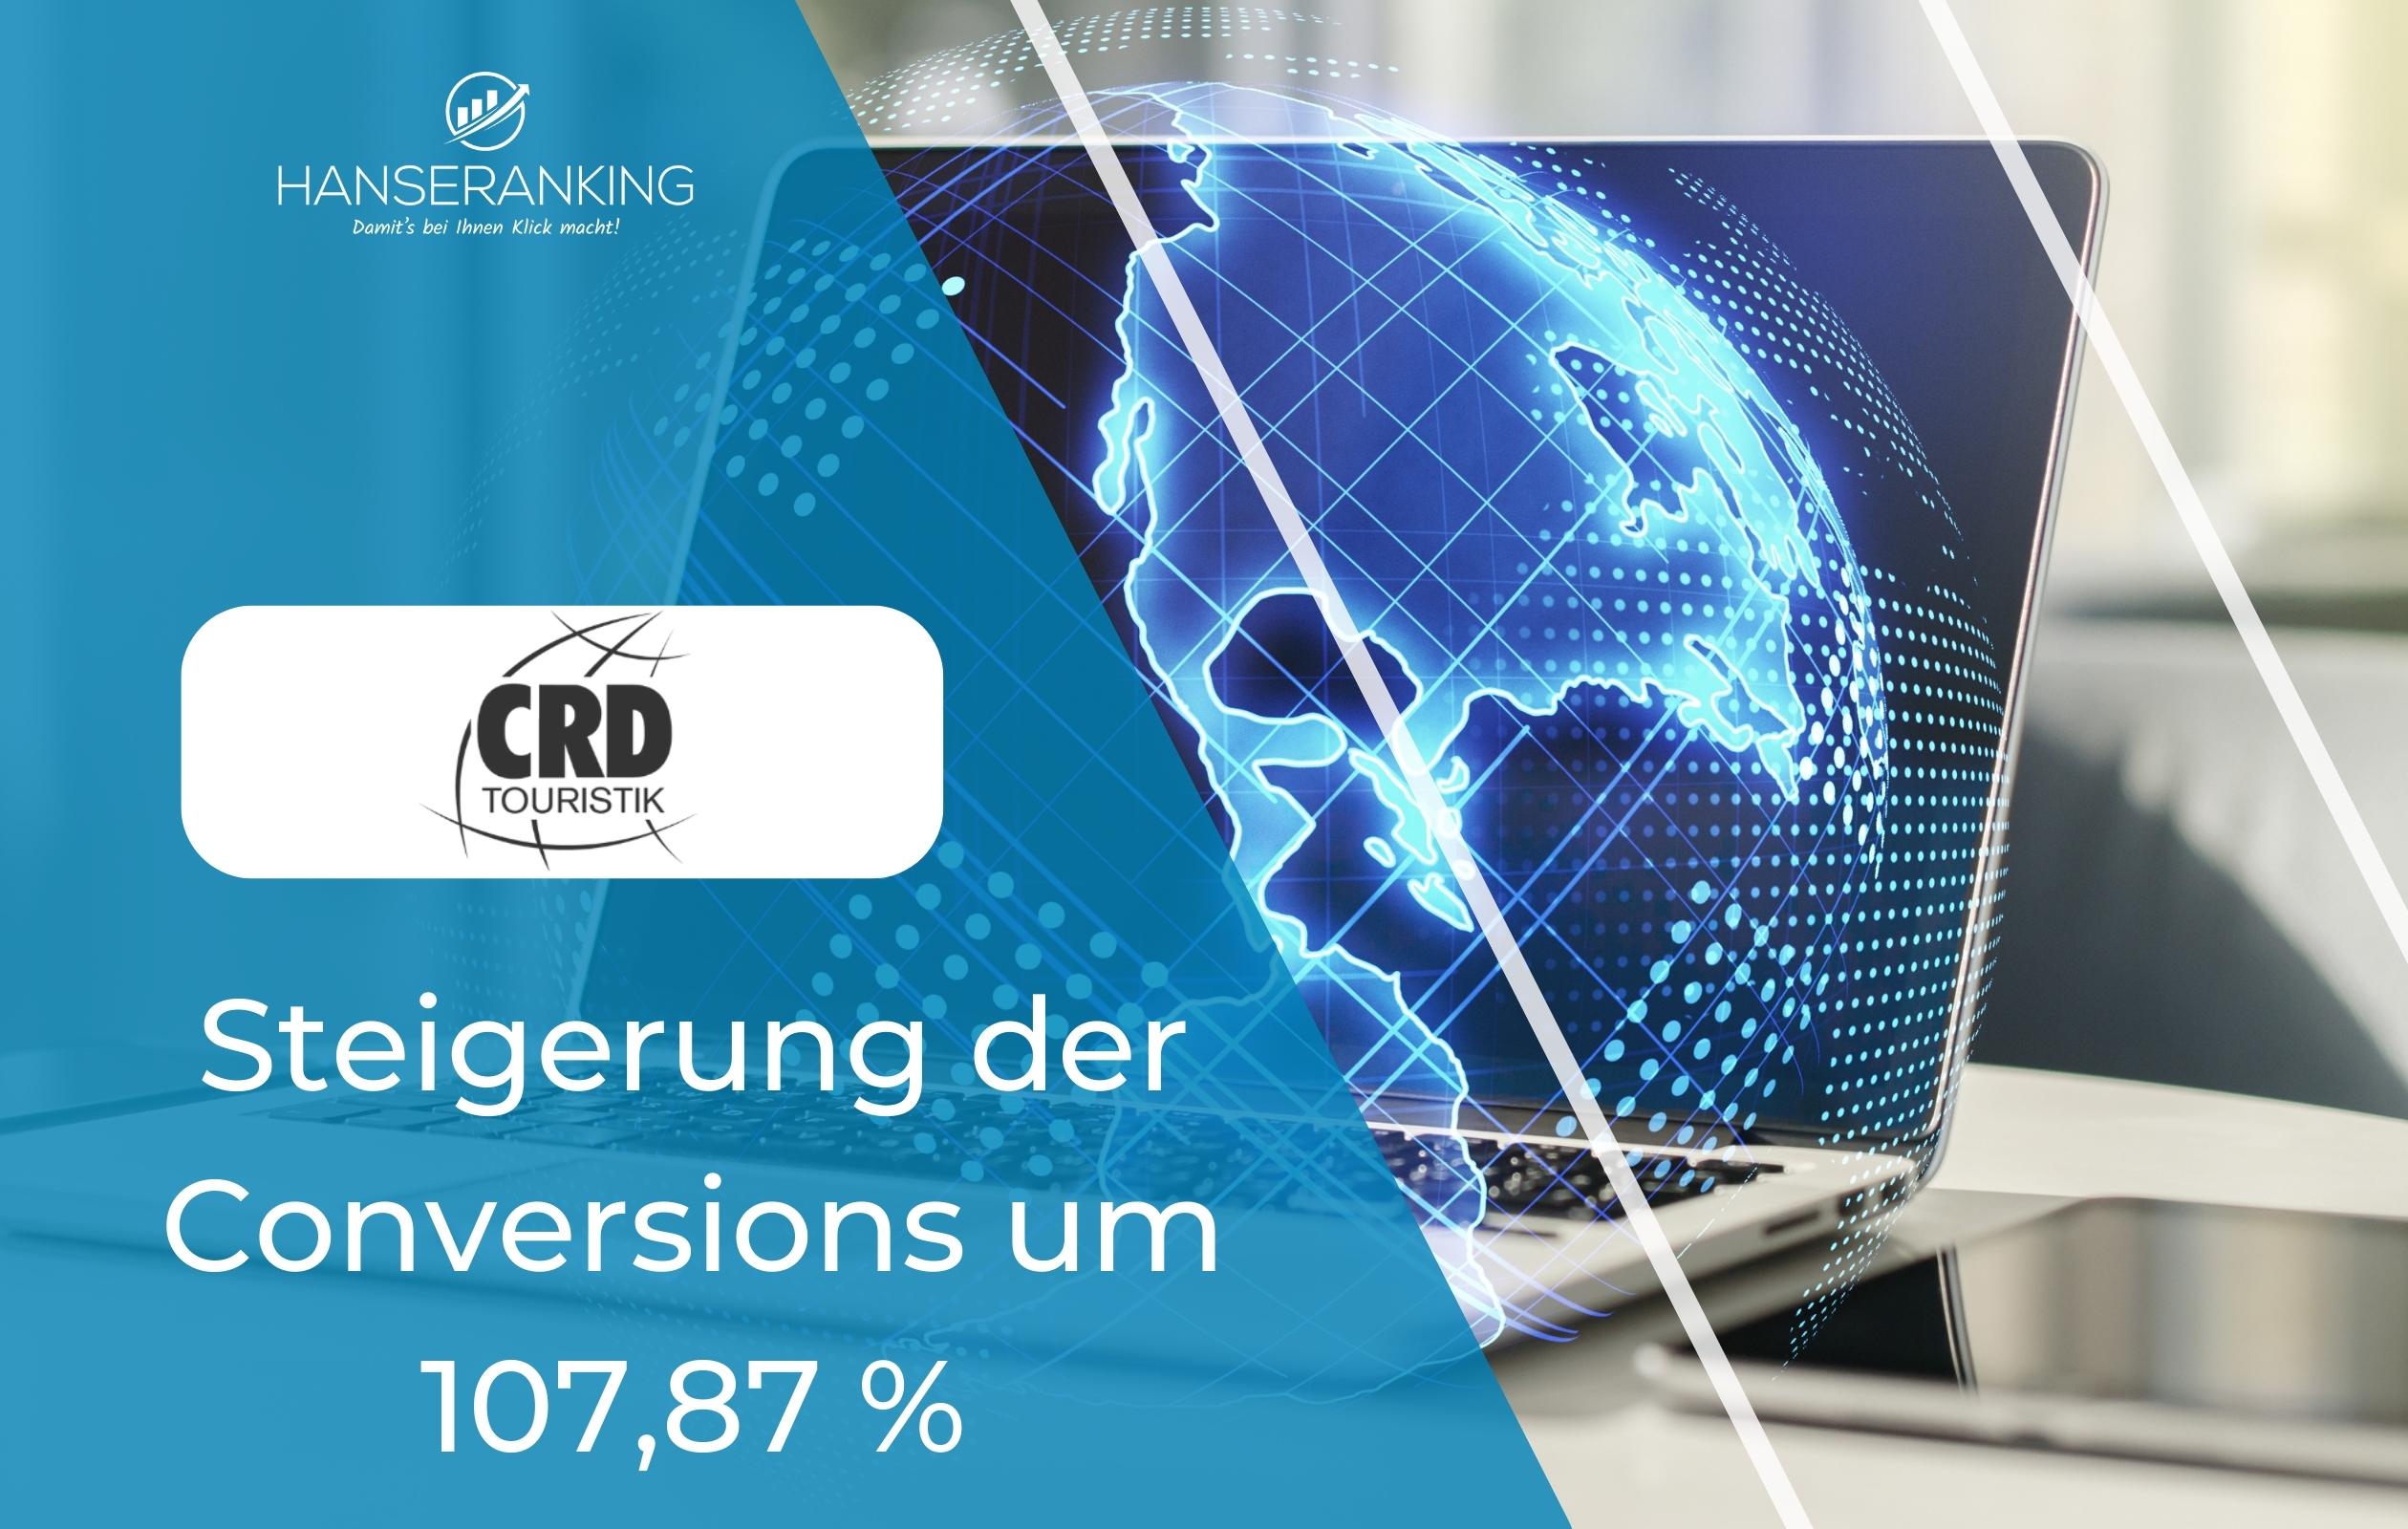 CRD Conversions Steigerung um 107,87%